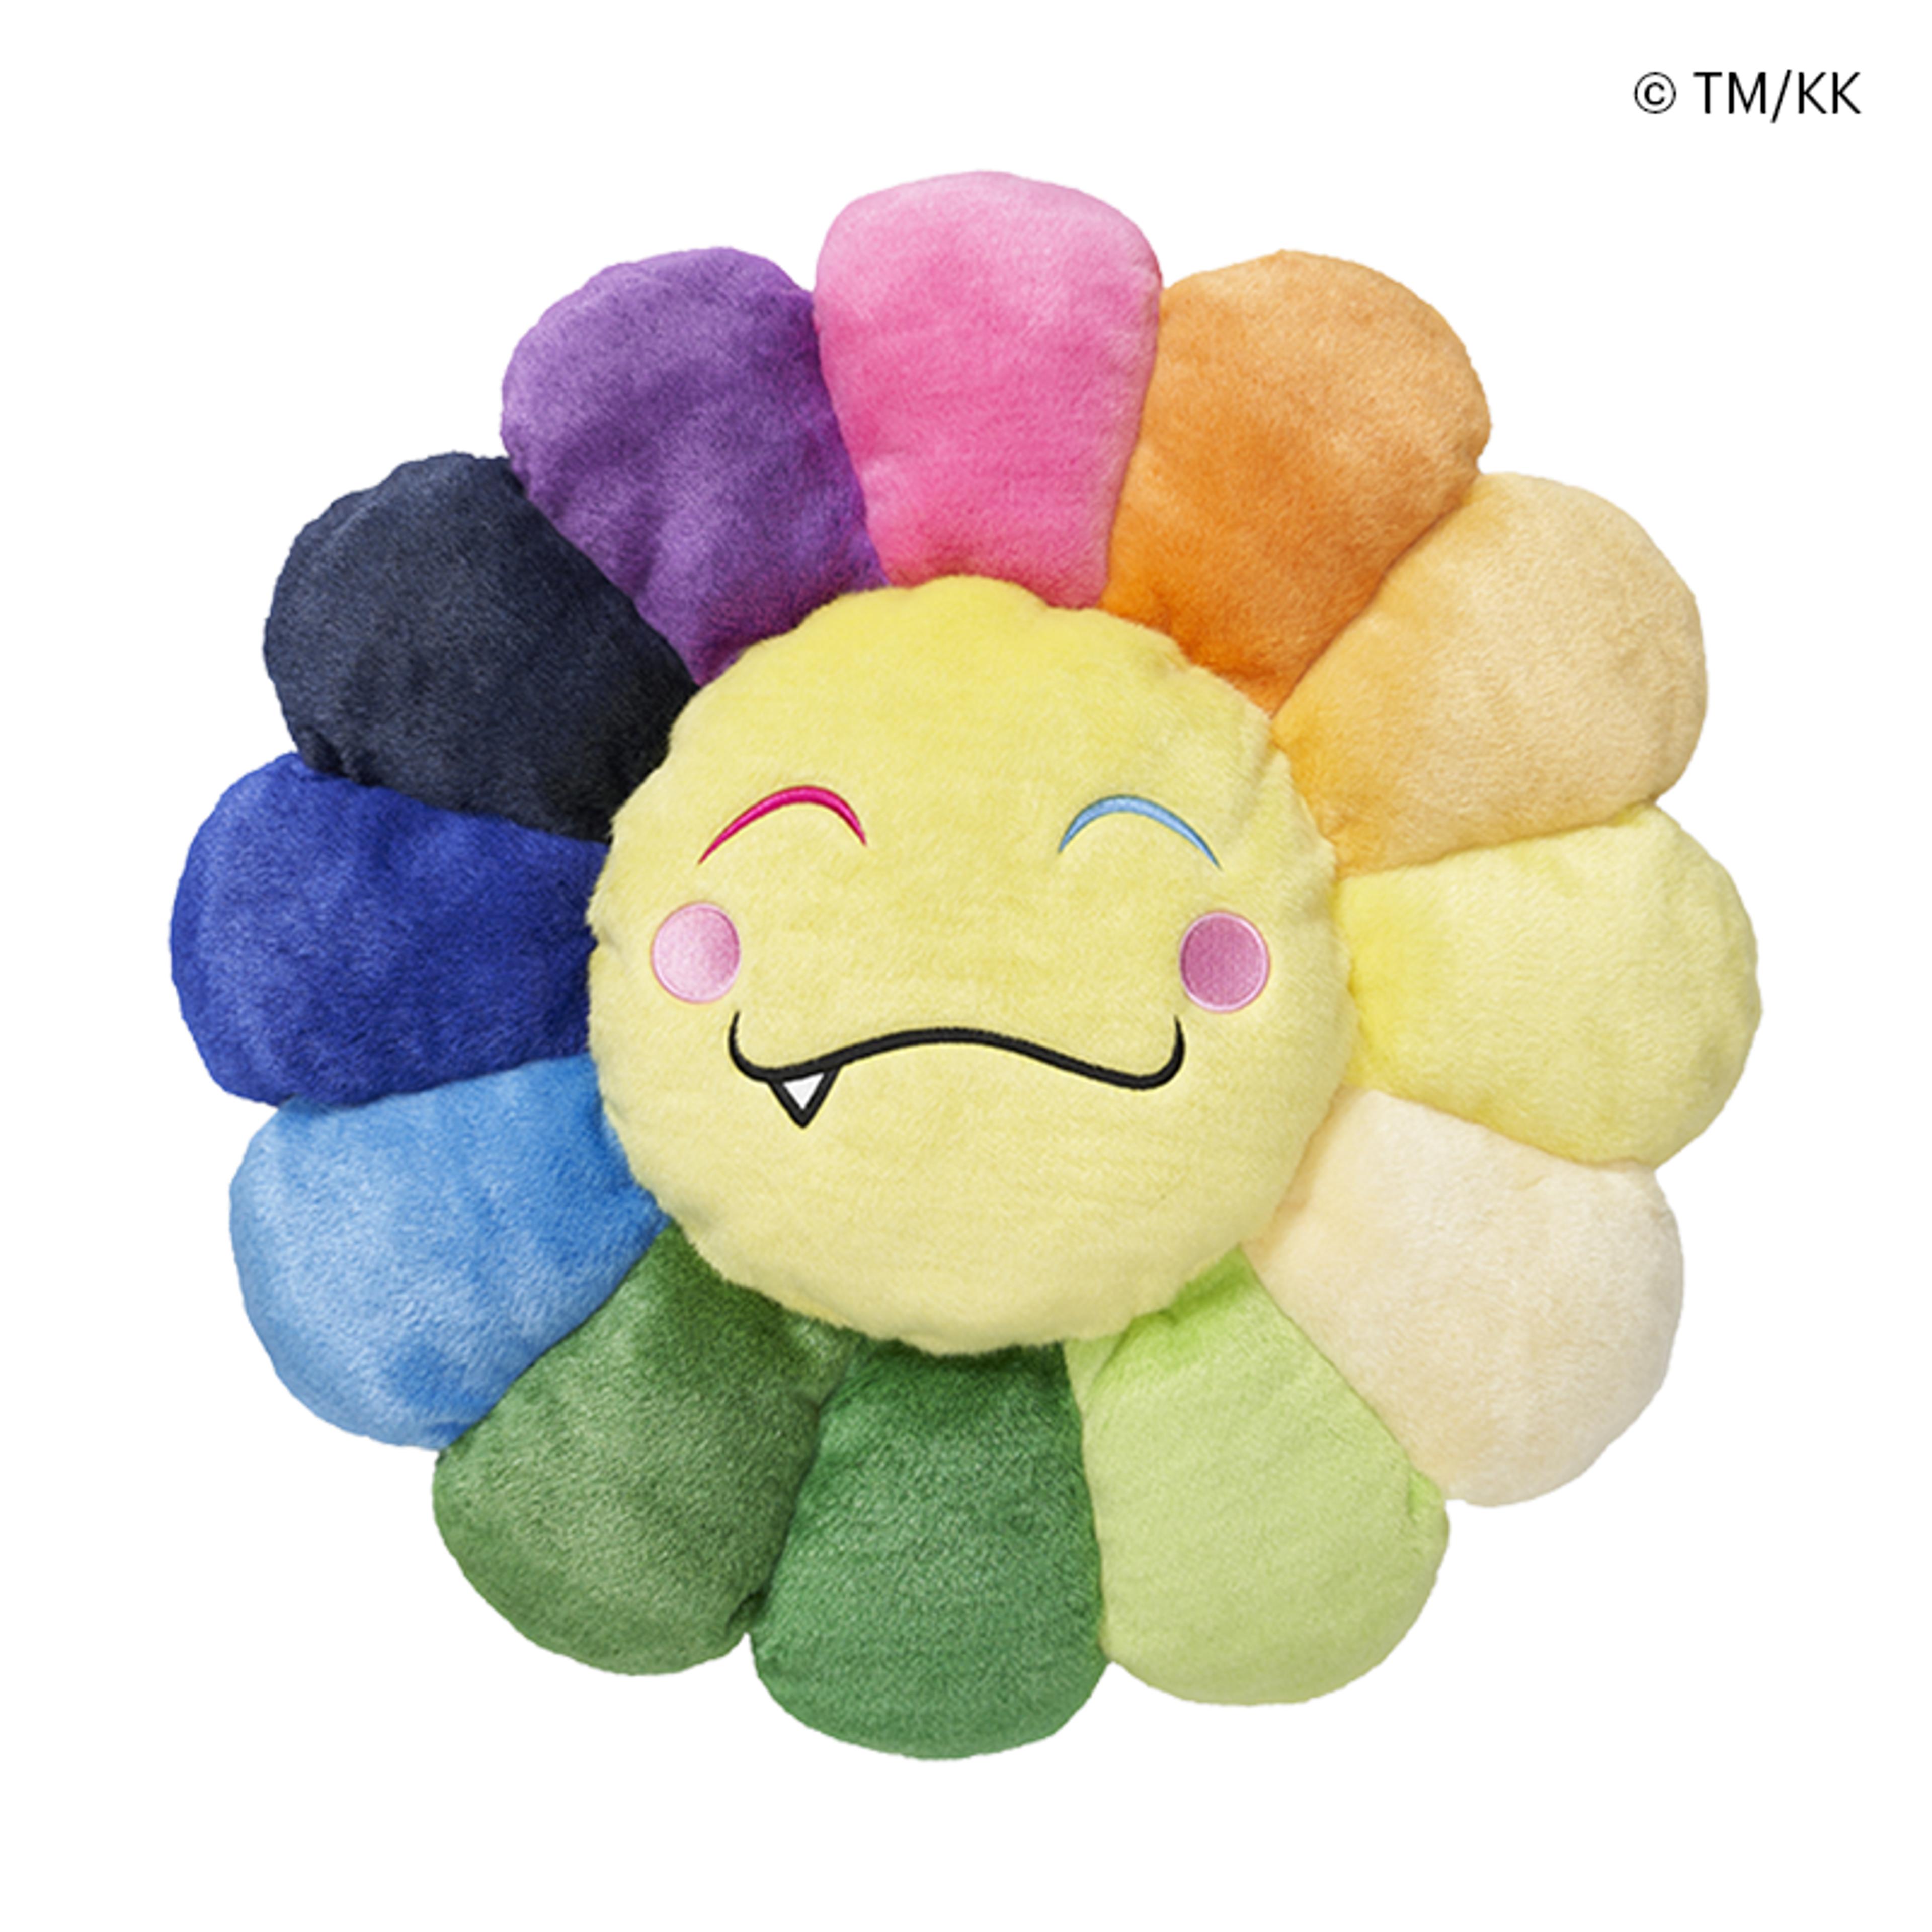 Flower Cushion / Flower Emoji Cushion 5 (60cm)